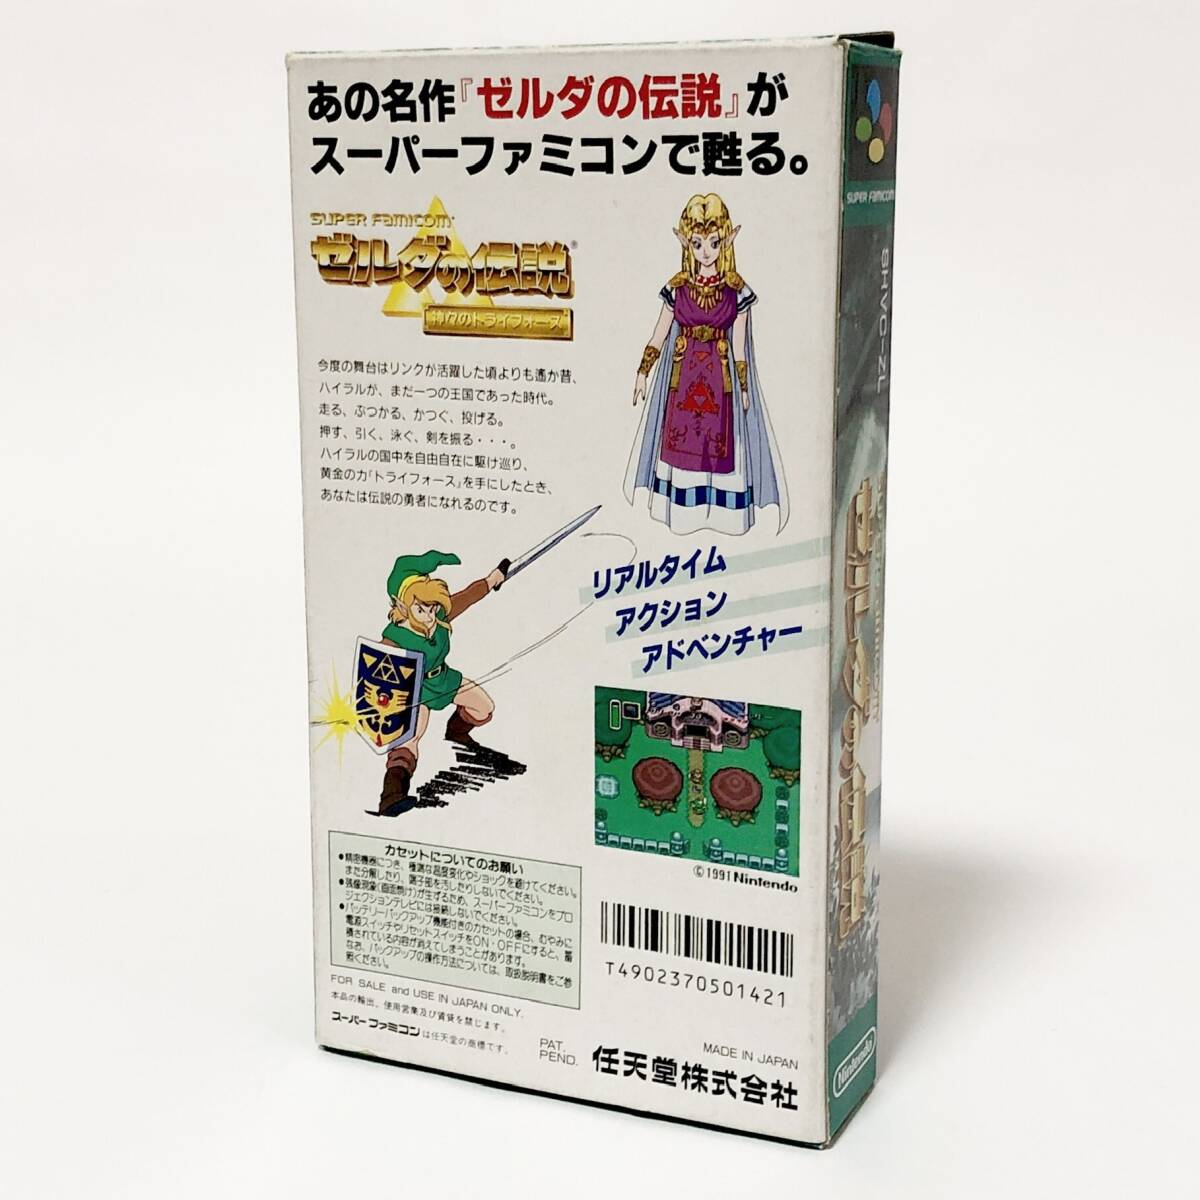 スーパーファミコン ゼルダの伝説 神々のトライフォース 箱説付き 痛みあり 任天堂 Nintendo Super Famicom The Legend of Zelda Tested_画像3